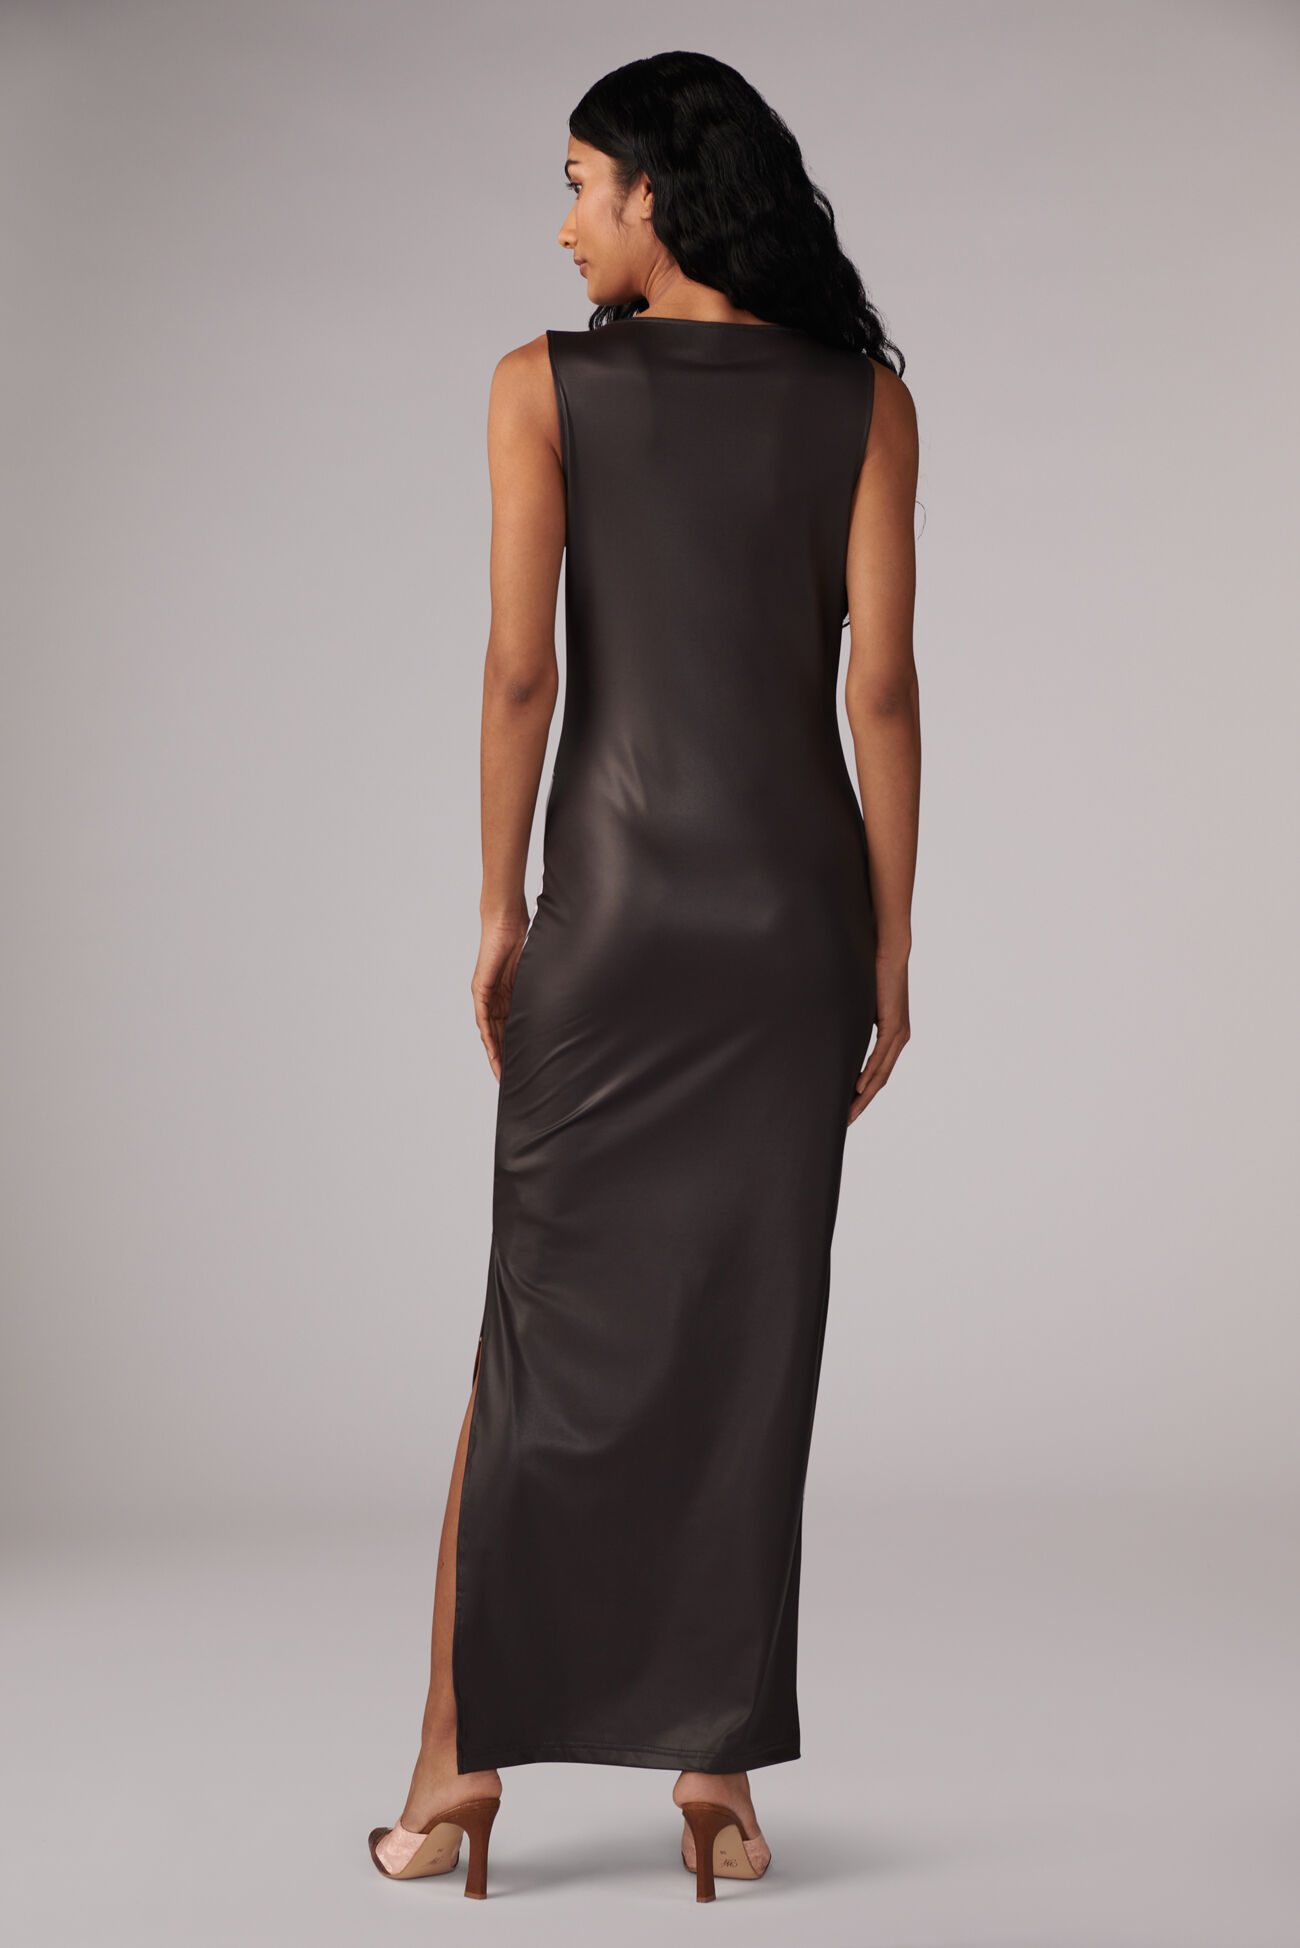 Marasca Graphic Maxi Dress Black